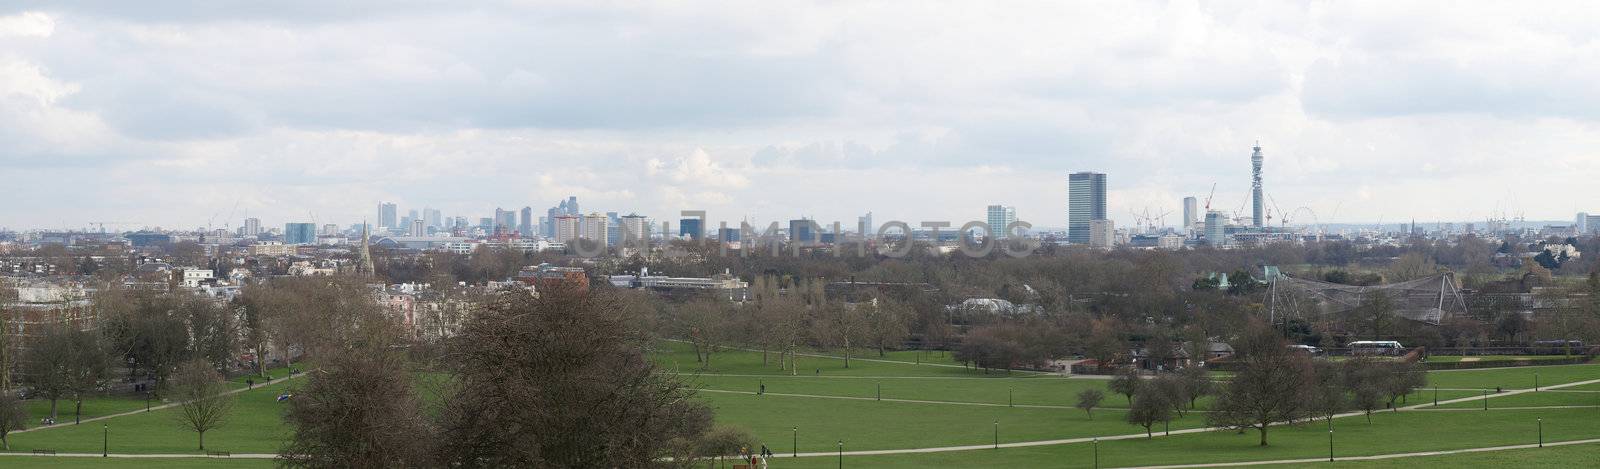 London panorama by claudiodivizia